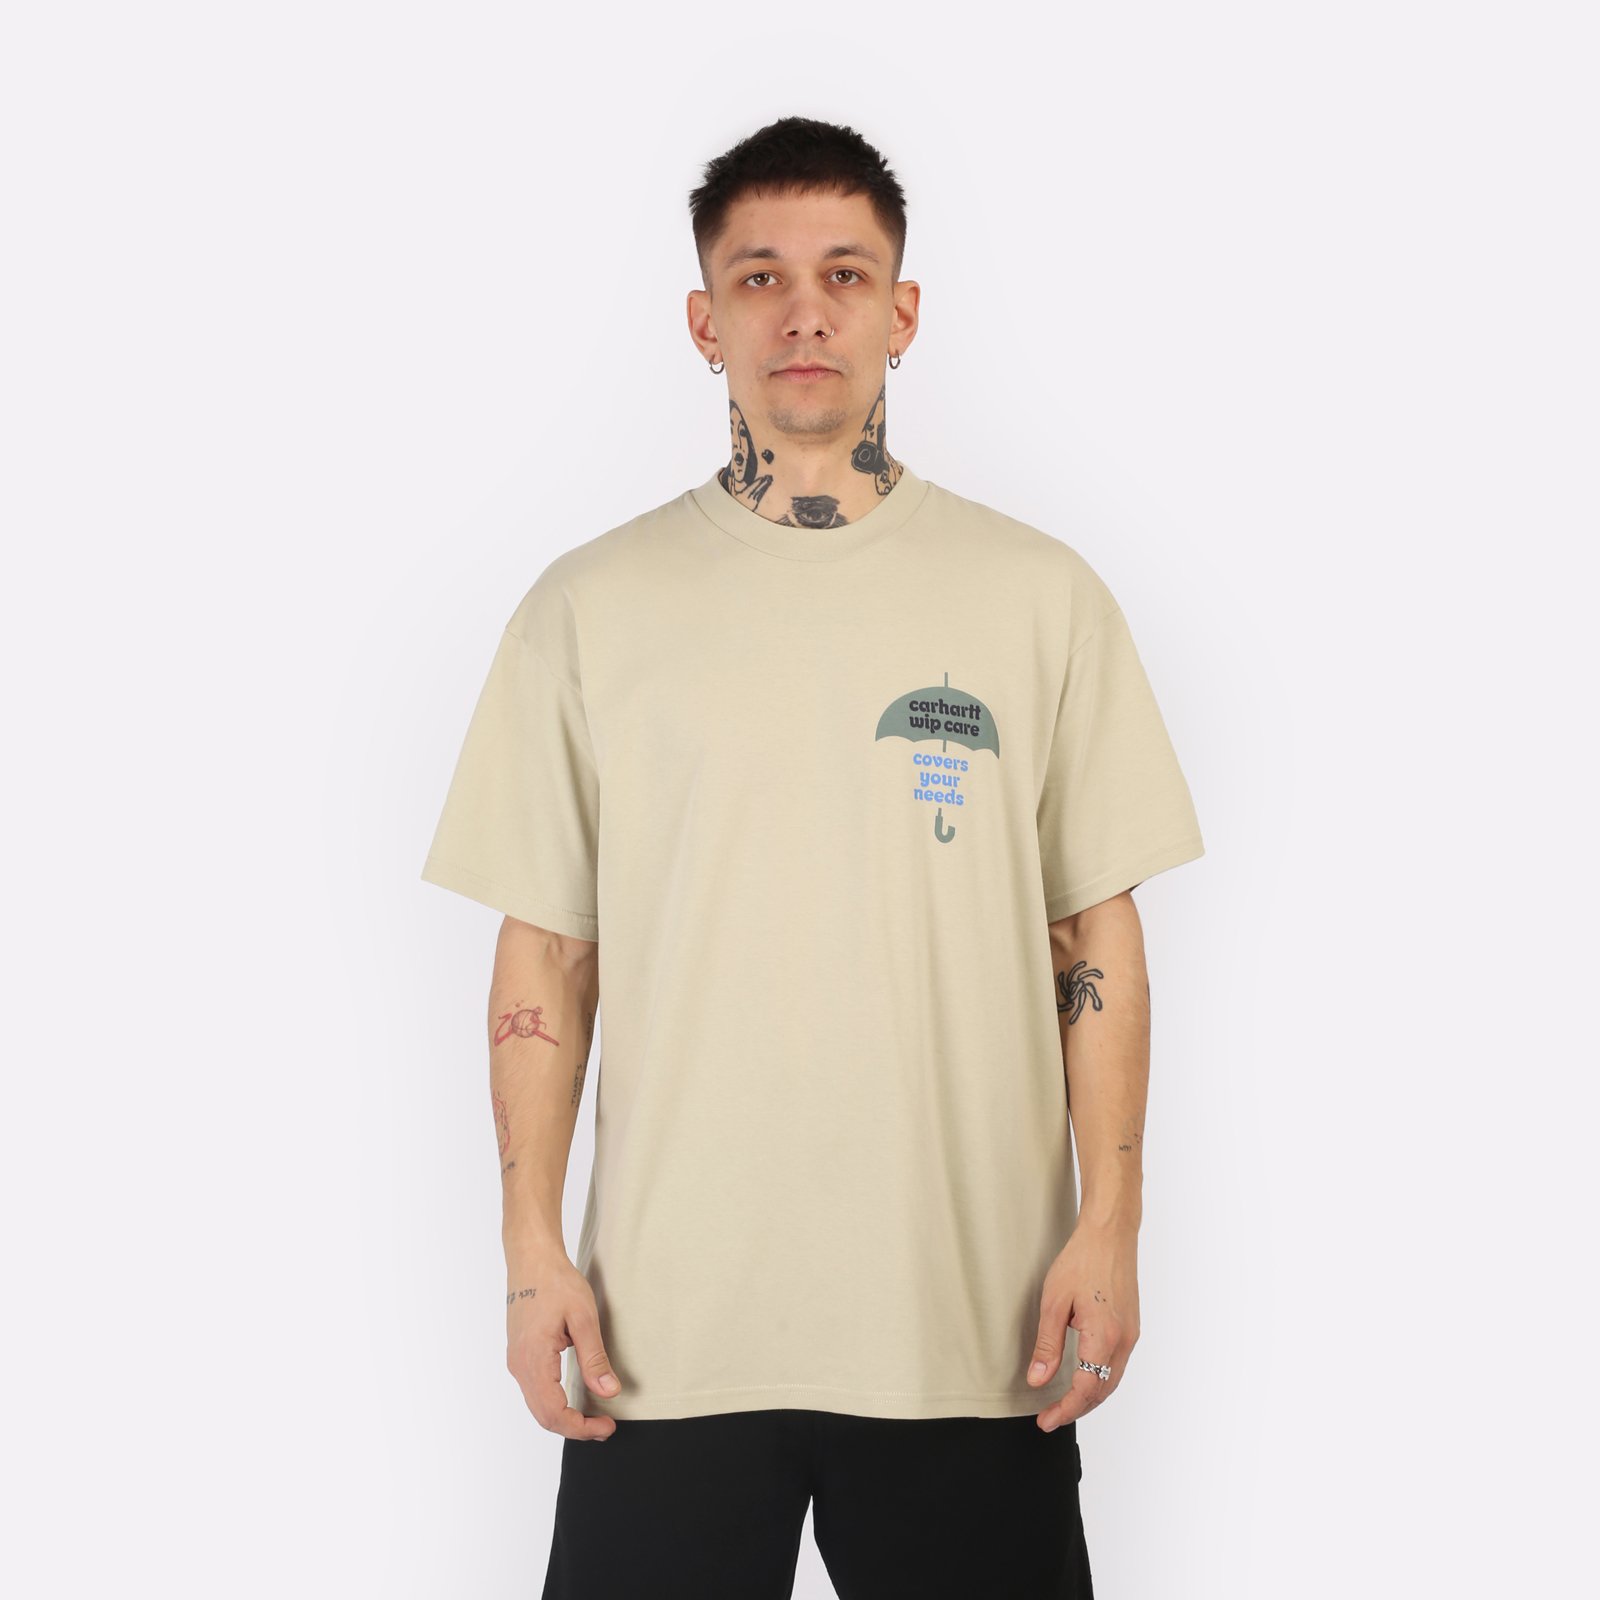 мужская футболка Carhartt WIP S/S Covers T-Shirt  (I033165-beryl)  - цена, описание, фото 1